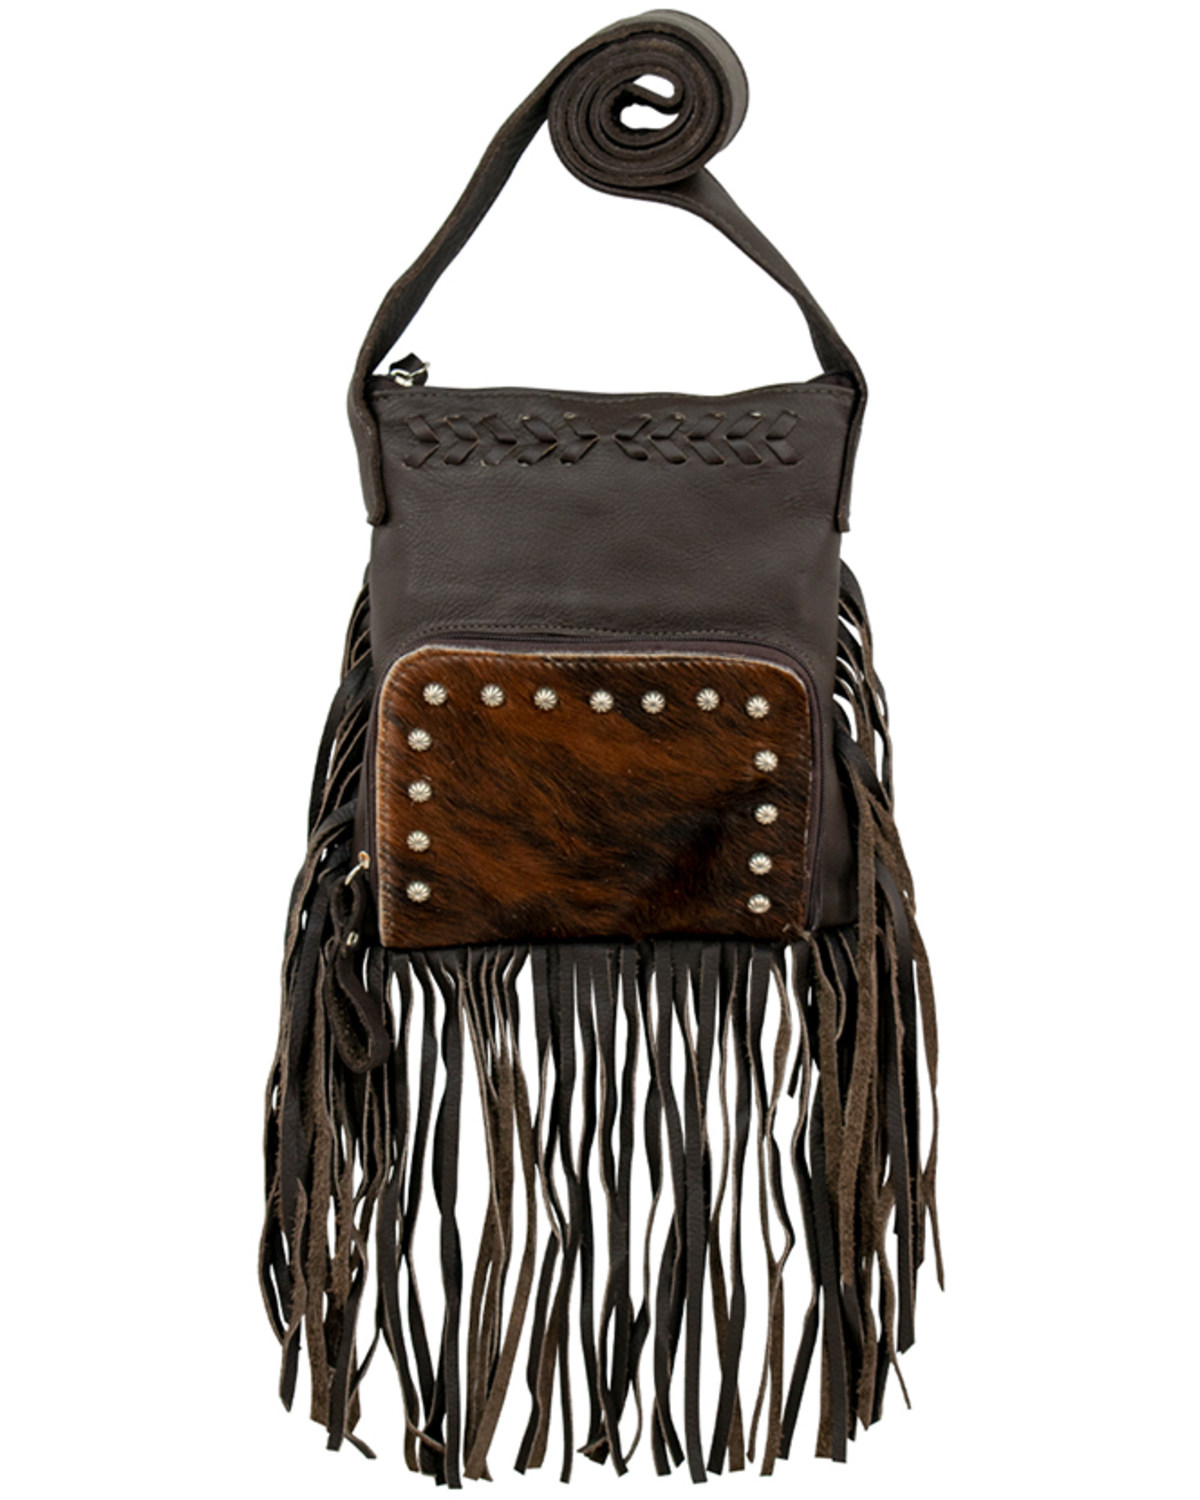 American West Women's Brindle-Hair On Fringe Handbag